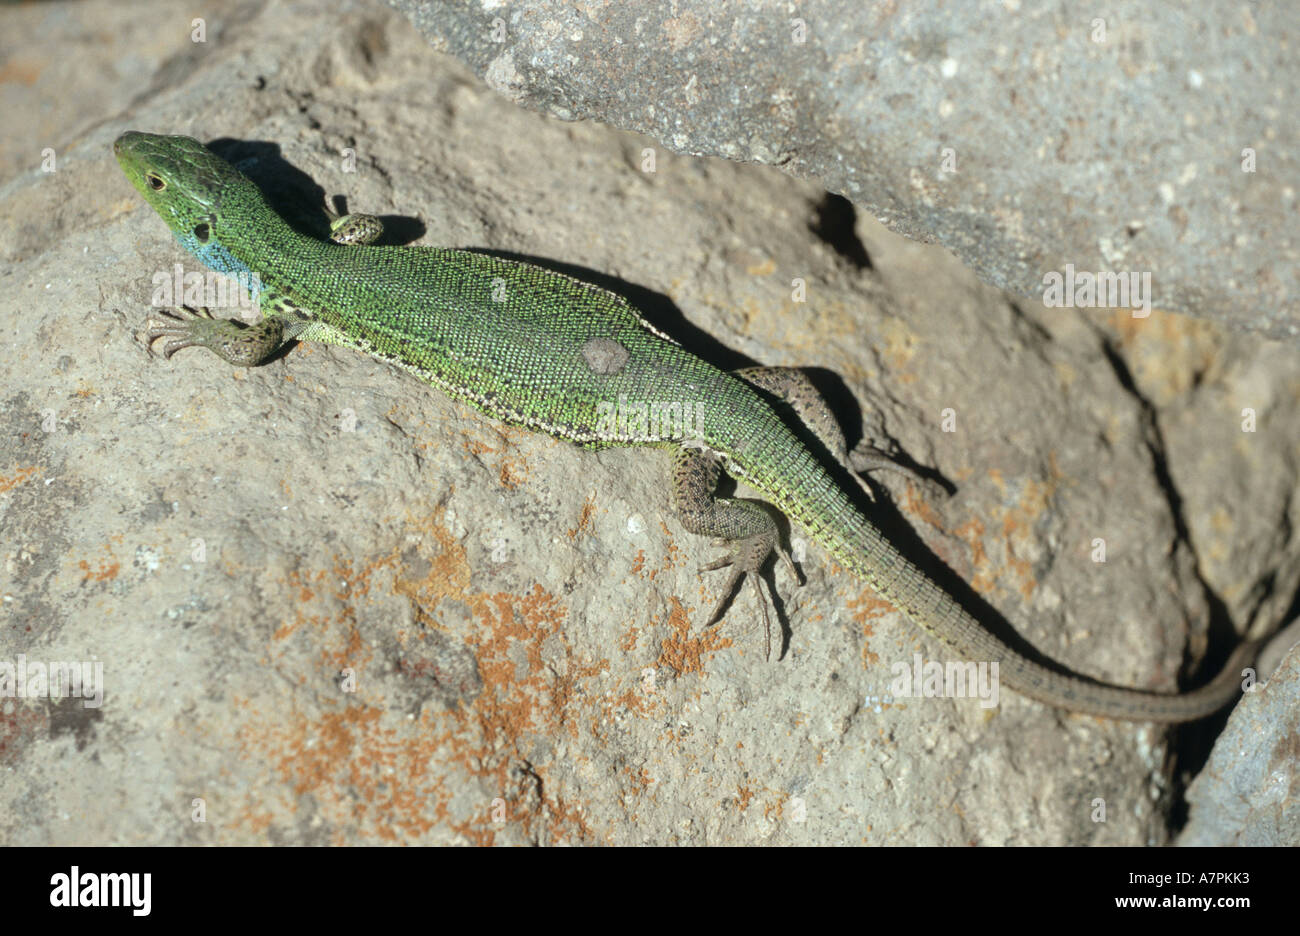 Lucertola verde smeraldo, lizard (Lacerta viridis), ramarro sulle rocce prendere un bagno di sole Foto Stock